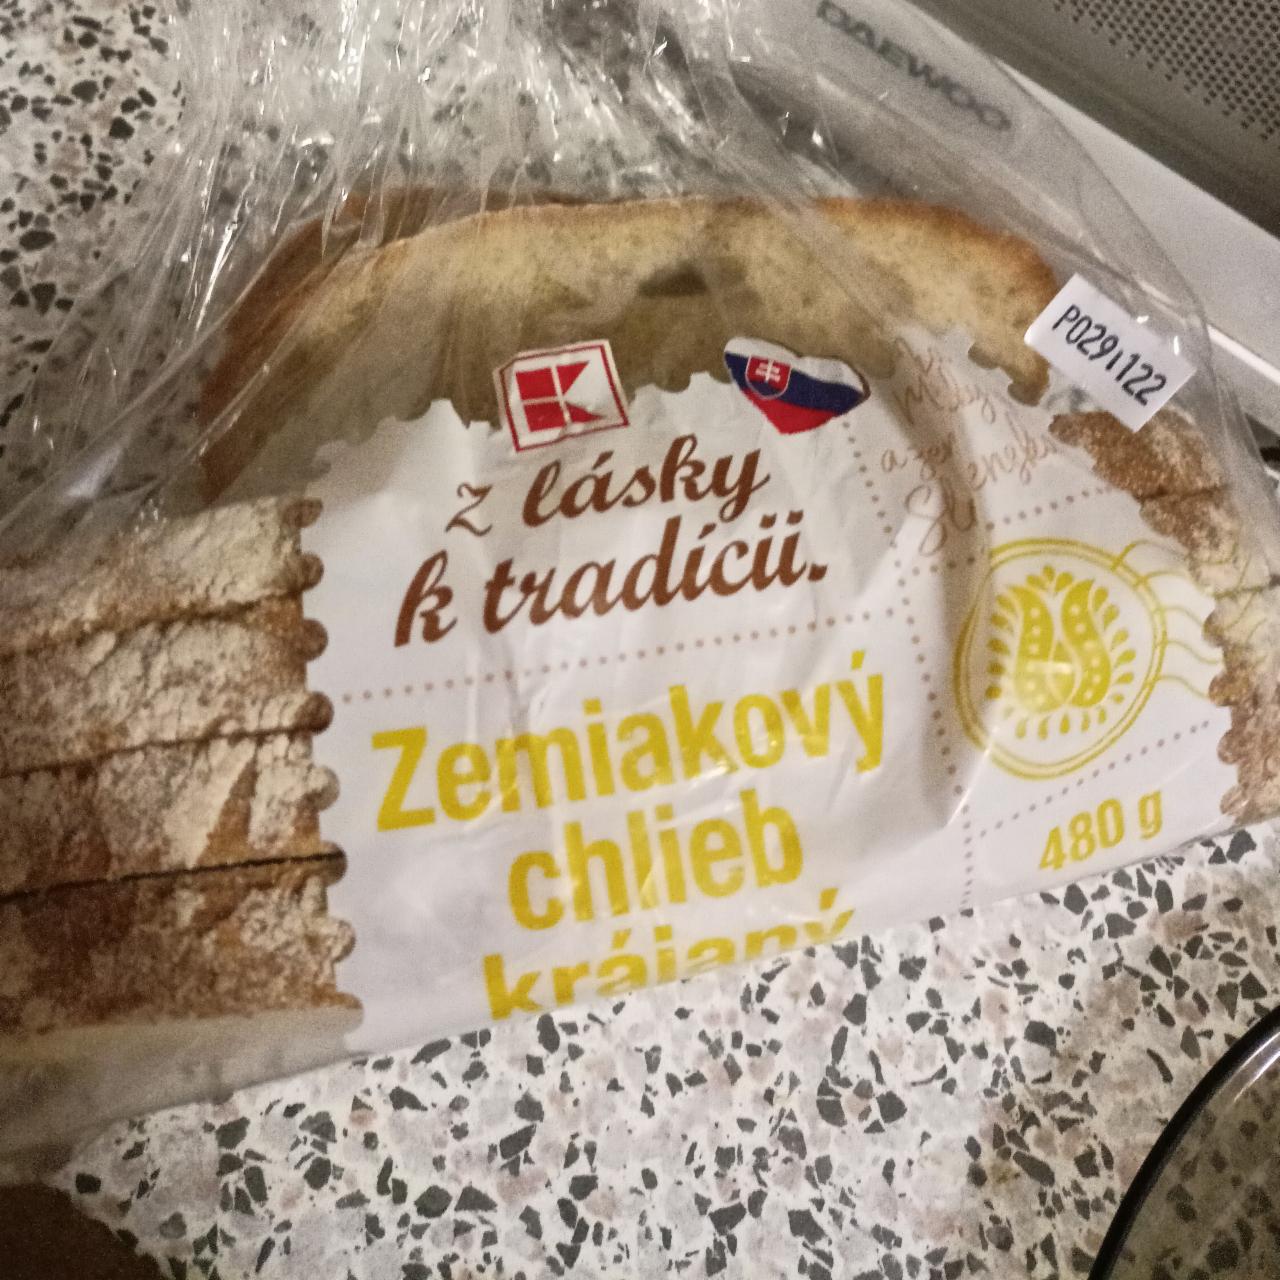 Fotografie - Zemiakový chlieb krájaný Z lásky k tradícii